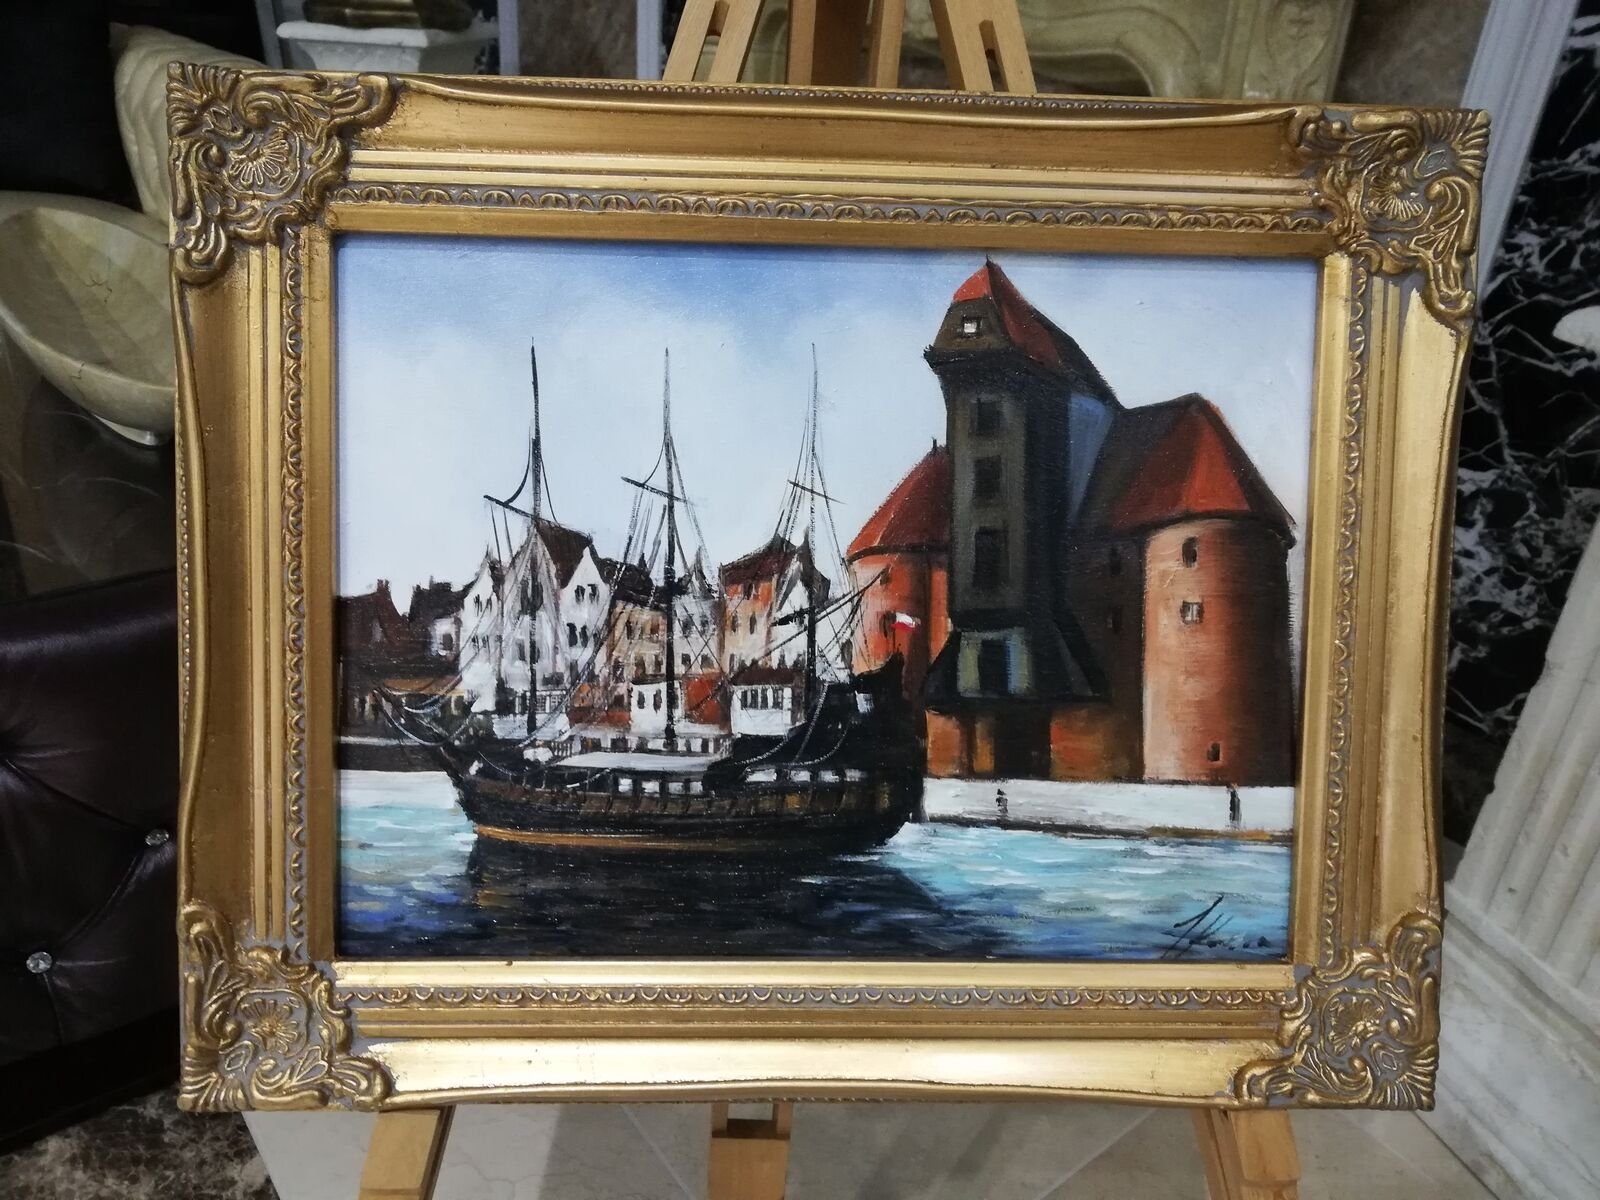 JVmoebel Gemälde Ölbild Bilder Gemälde Handarbeit Bild 40 * 50 cm Sofort lieferbar, Zeitgenössische Malerei